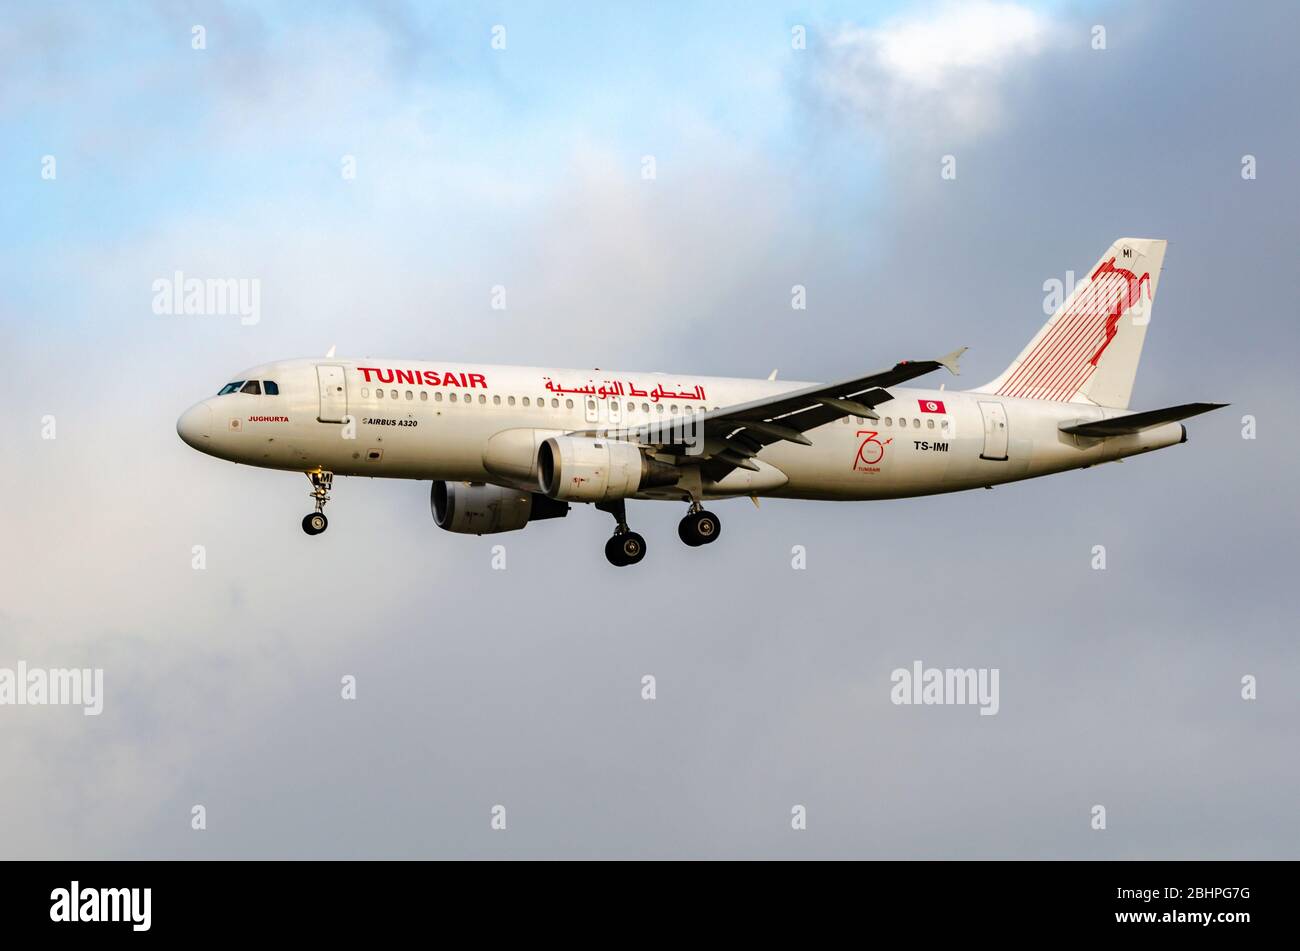 FRANCOFORTE, ASSIA GERMANIA - DICEMBRE 23: Airbus A320 di Tunisair che arriva all'aeroporto di Francoforte. Tunisair è la compagnia aerea di bandiera della Tunisia. Foto Stock